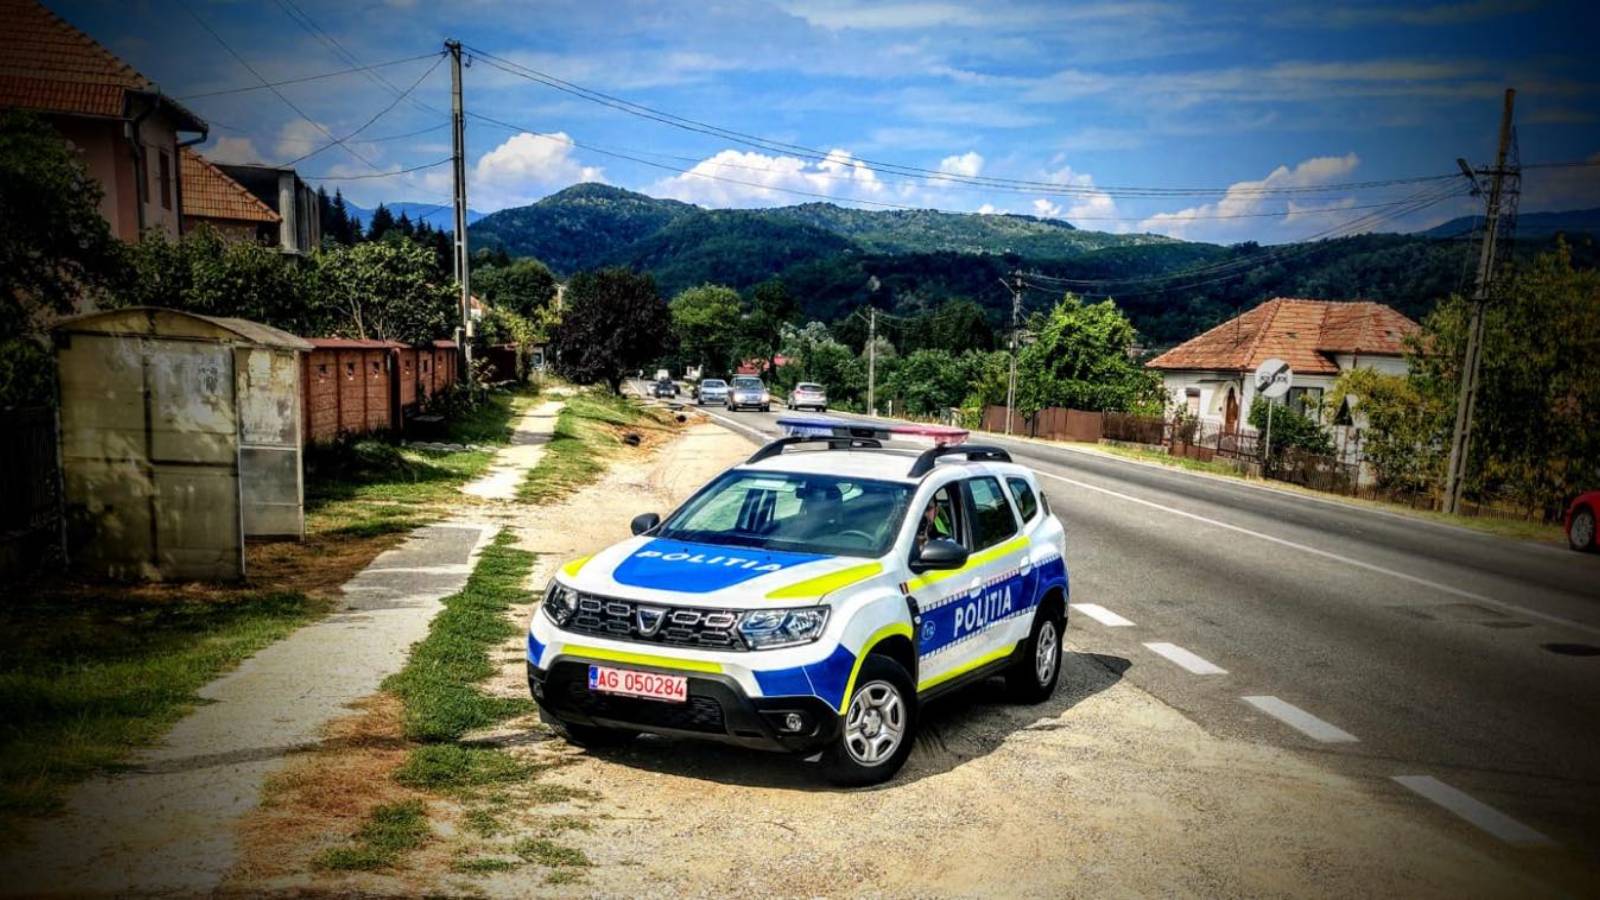 Romanian poliisin viesti